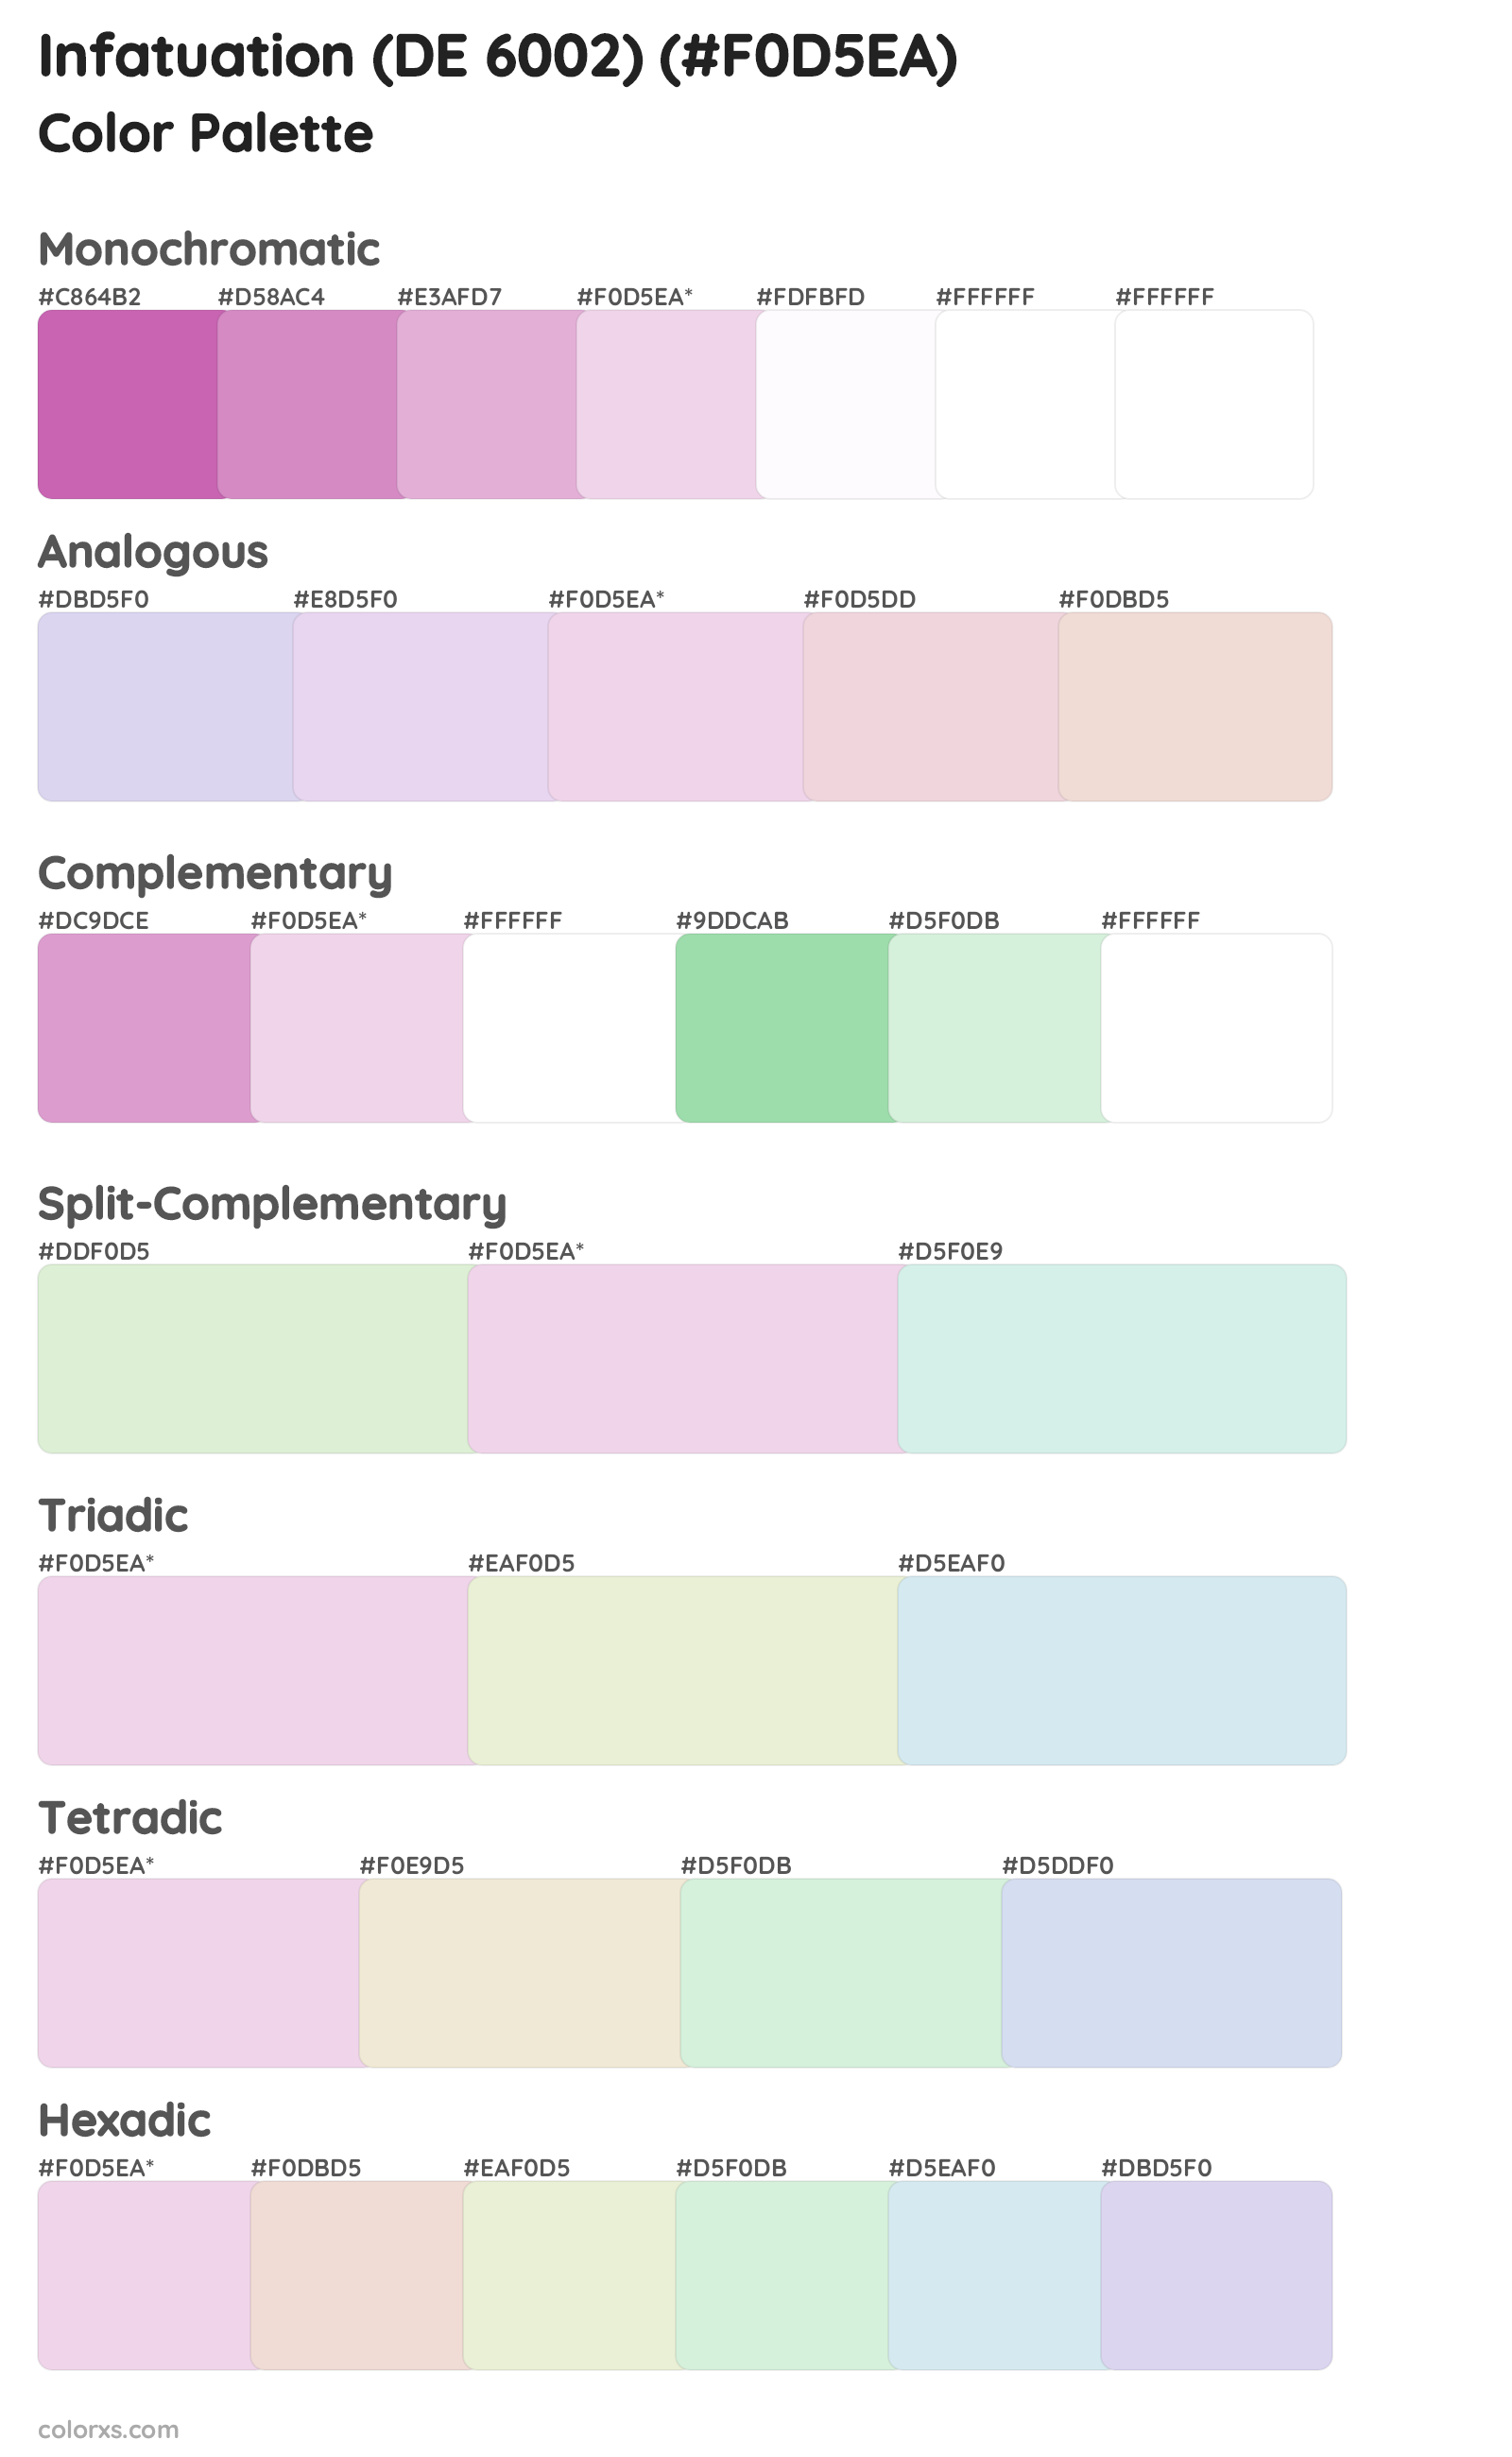 Infatuation (DE 6002) Color Scheme Palettes